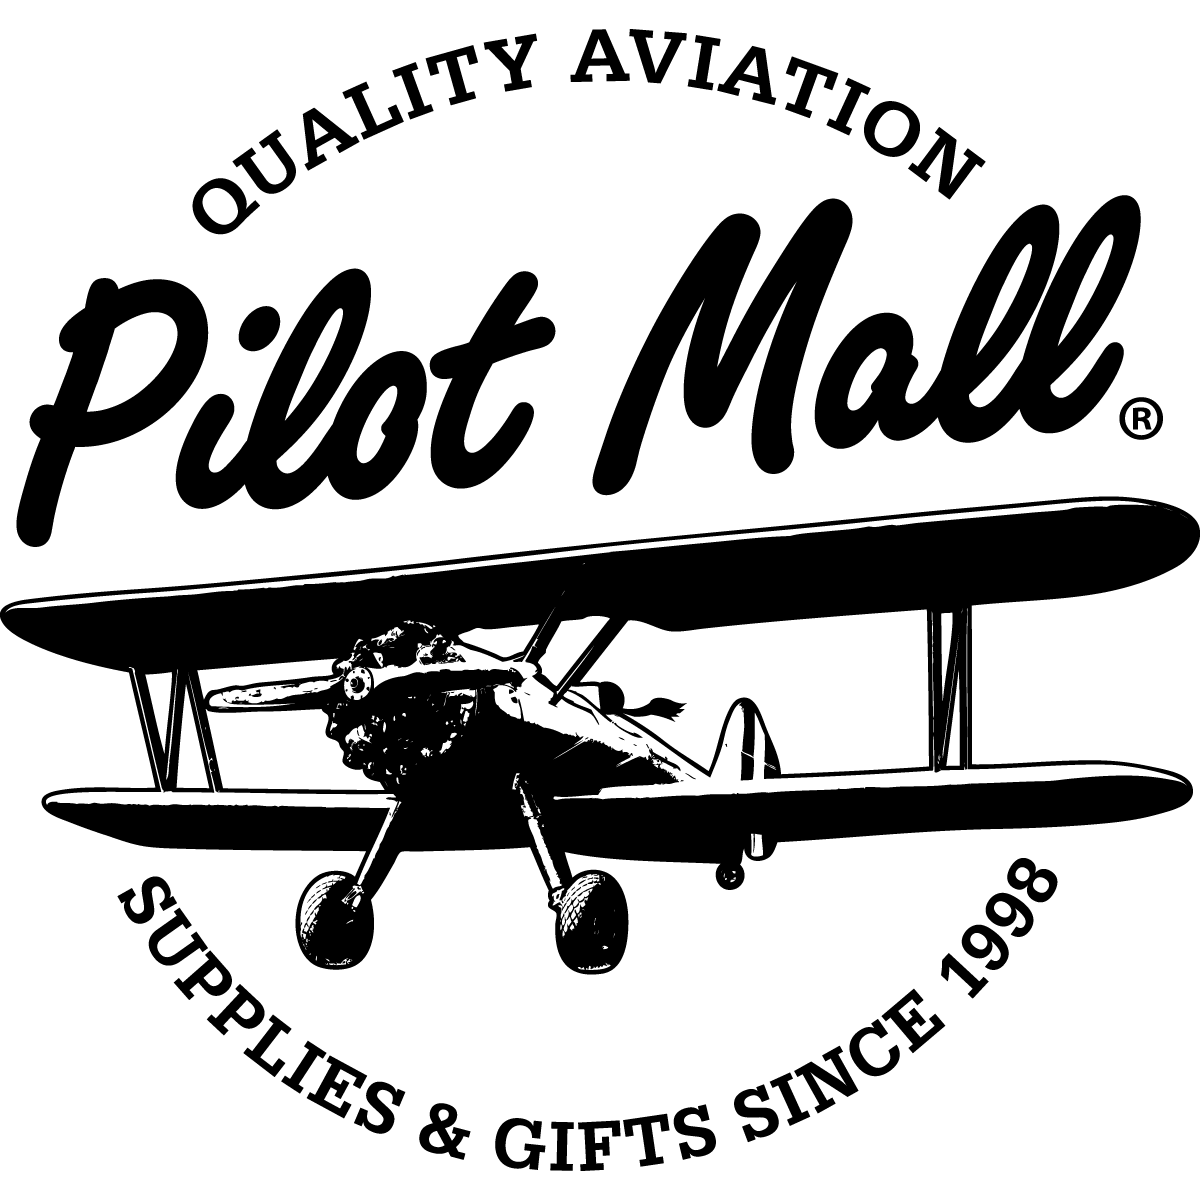 Corporate Aircraft Logo - PilotMall.com Pilot Shop